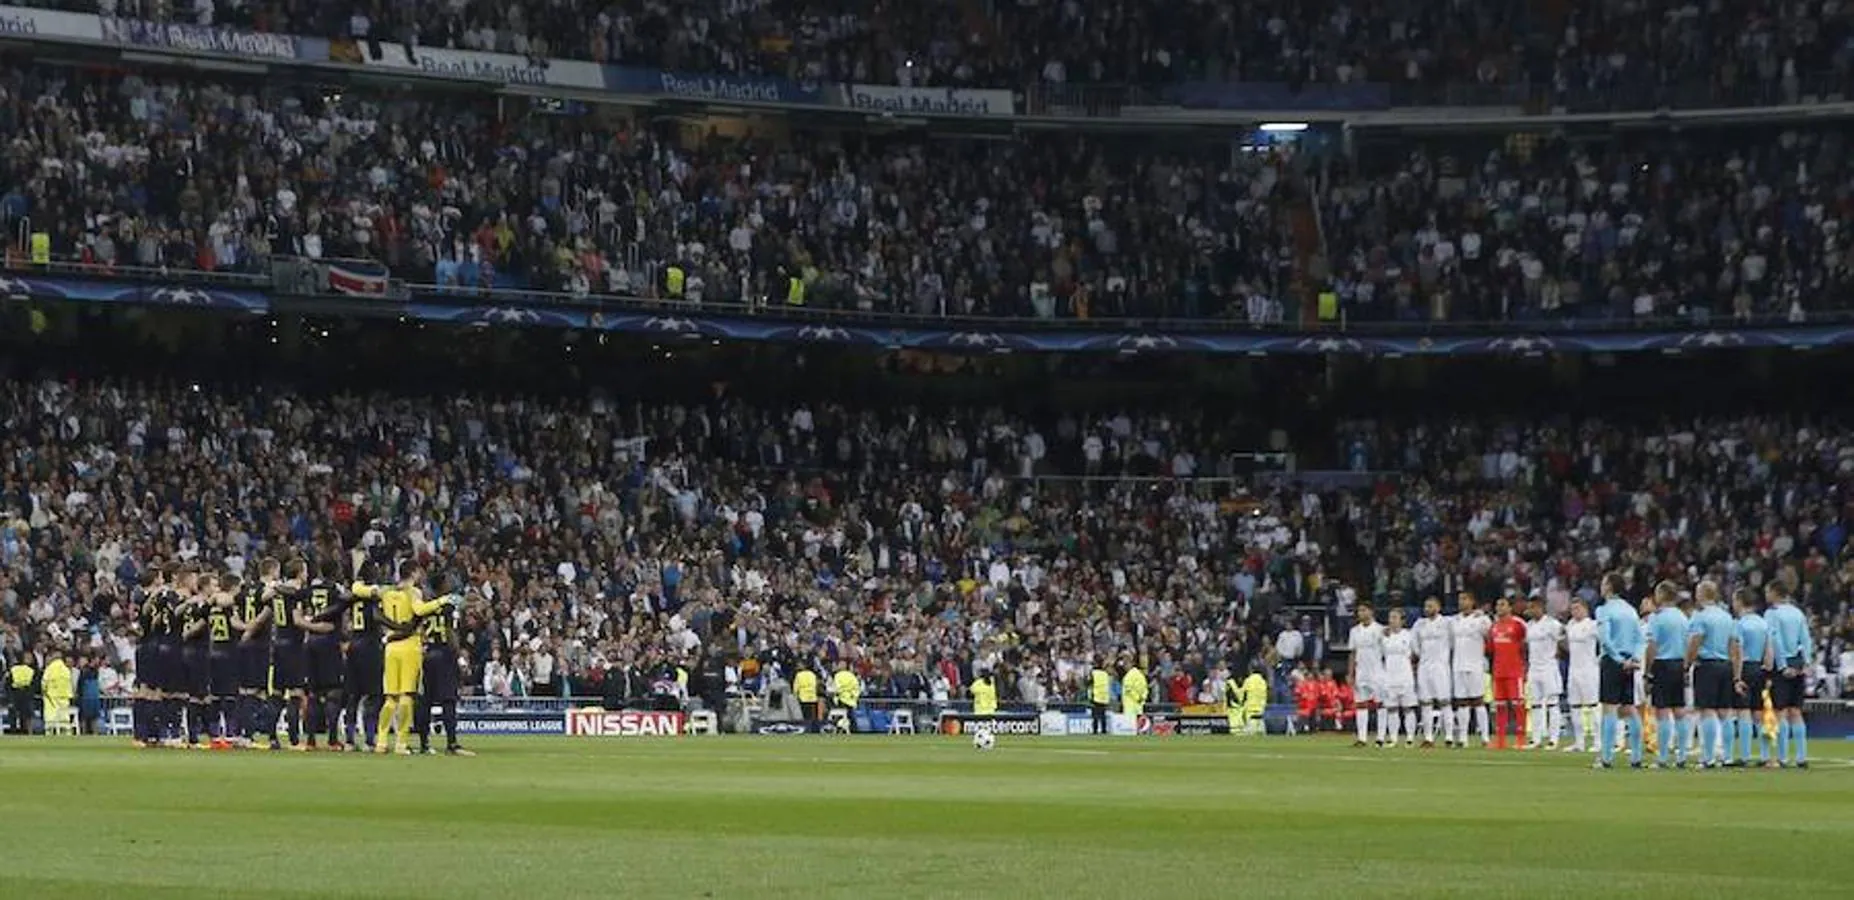 El Real Madrid se midió al Tottenham, que nunca había marcado un gol en sus duelos anteriores pero esta vez sí fue capaz de anotar en la meta madridista.